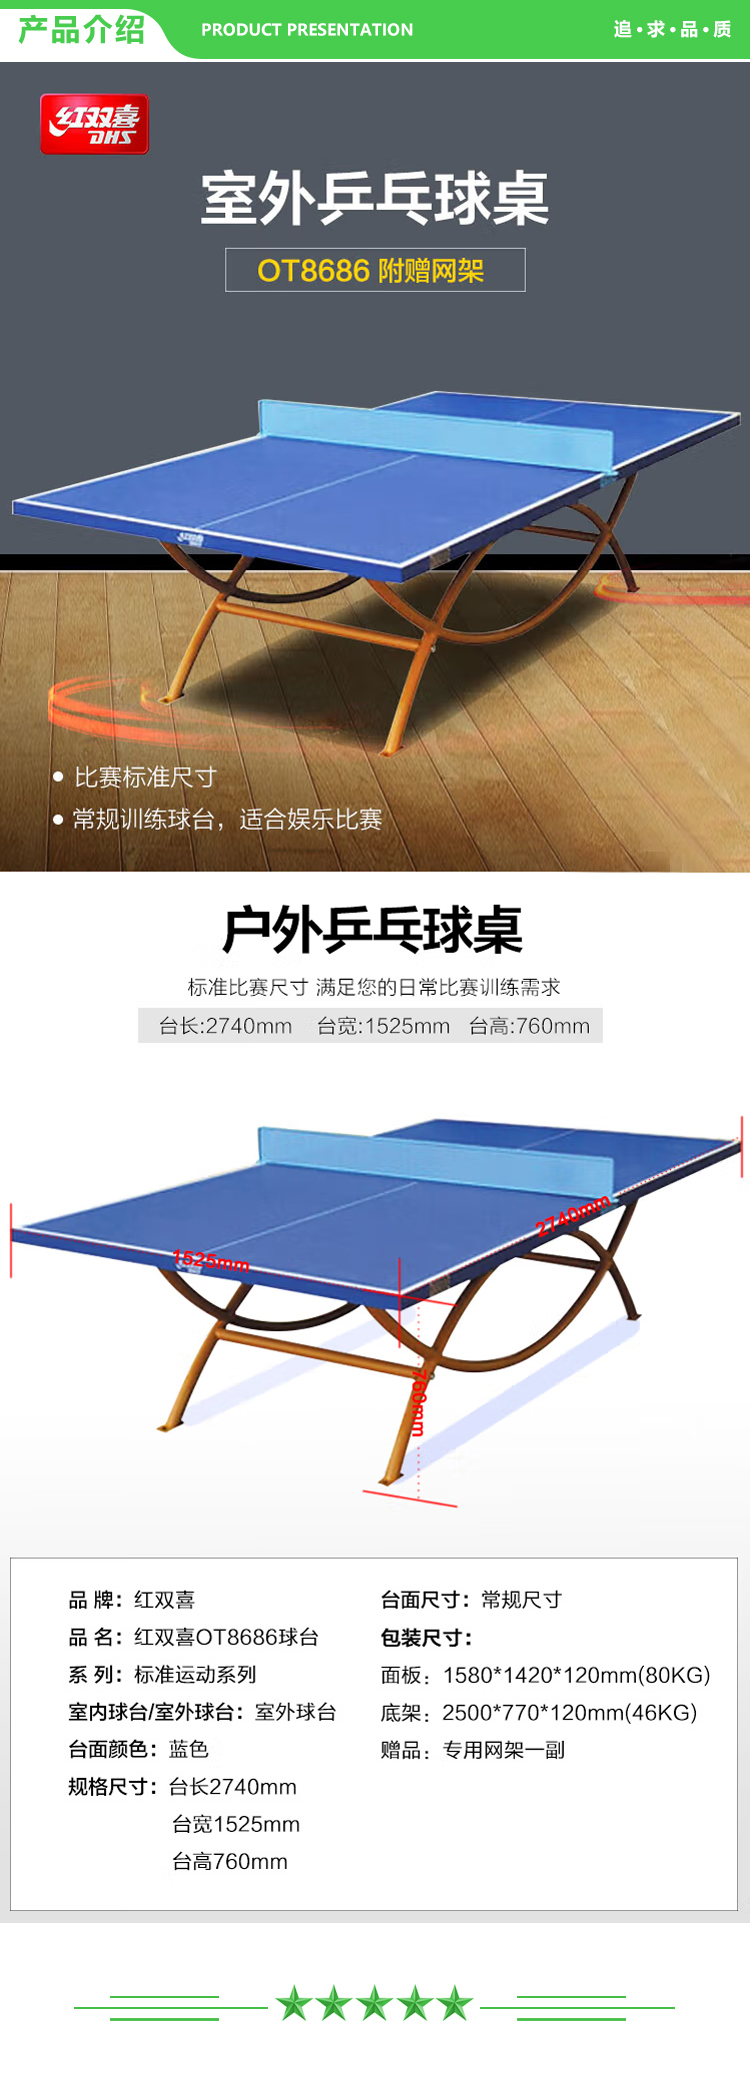 红双喜 DHS DXBD163-1(OT8686) 户外乒乓球桌室外乒乓球台训练比赛用乒乓球案子 .jpg